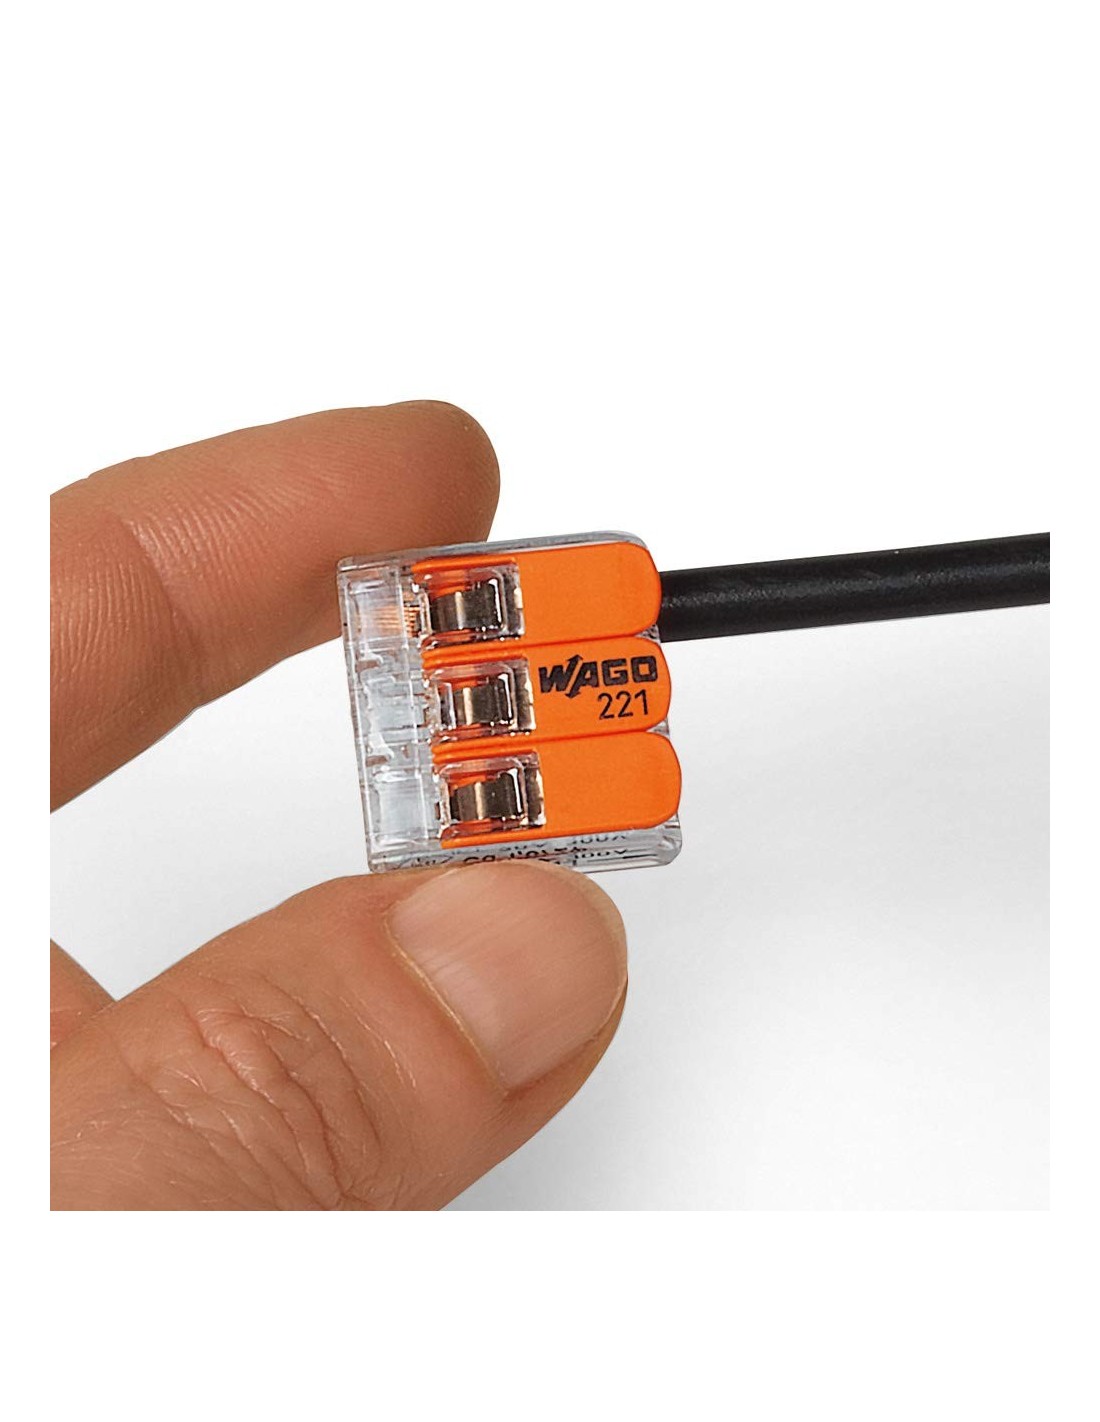 WAGO S221 : 50 mini bornes de connexion rapide 3 entrées pour fils souples  et rigides blindés